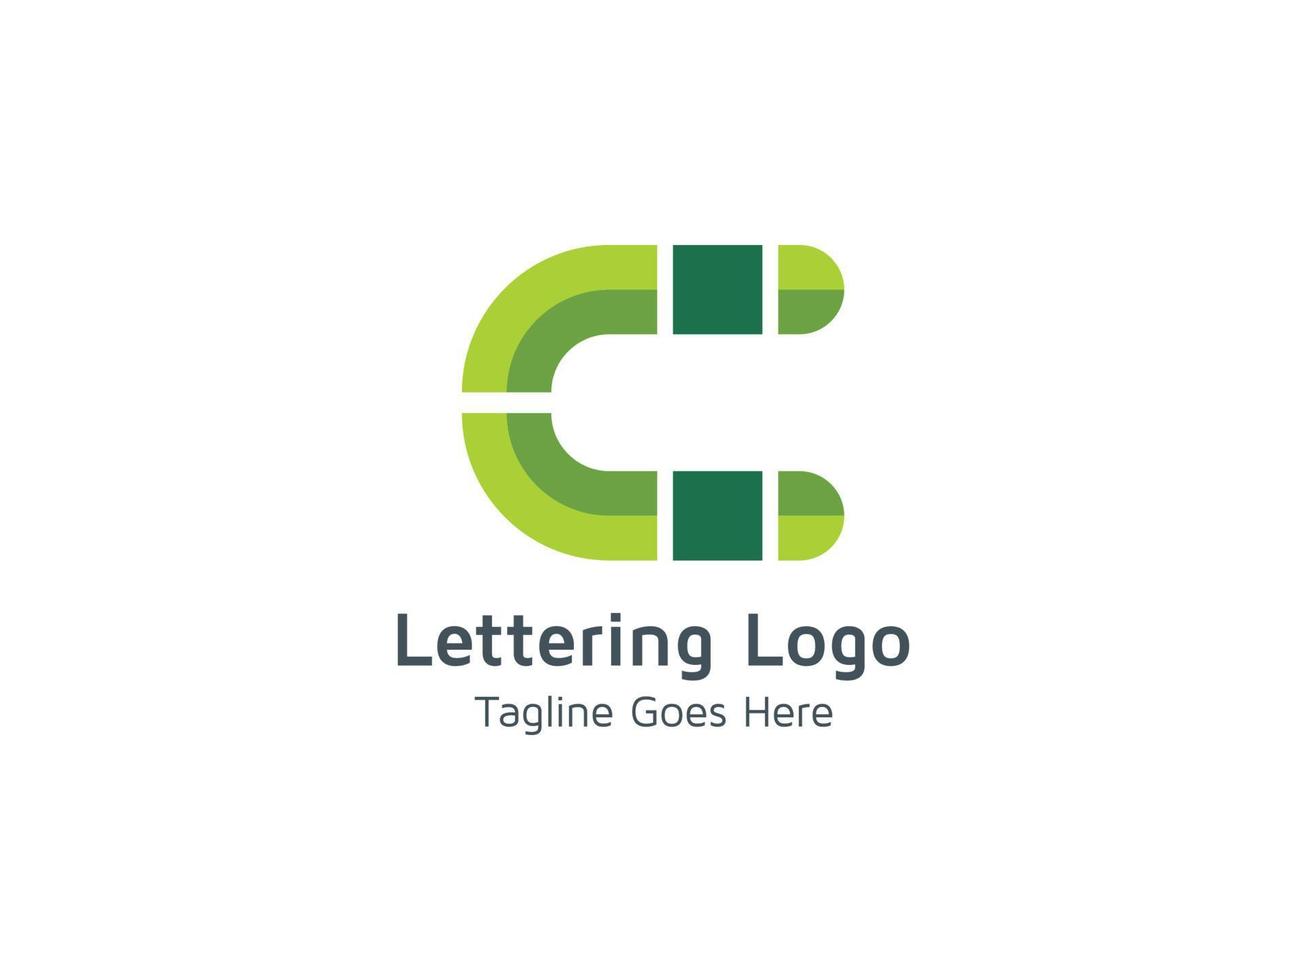 kreativer c-buchstabe anfängliche logo-design-vorlage kostenloser vektor